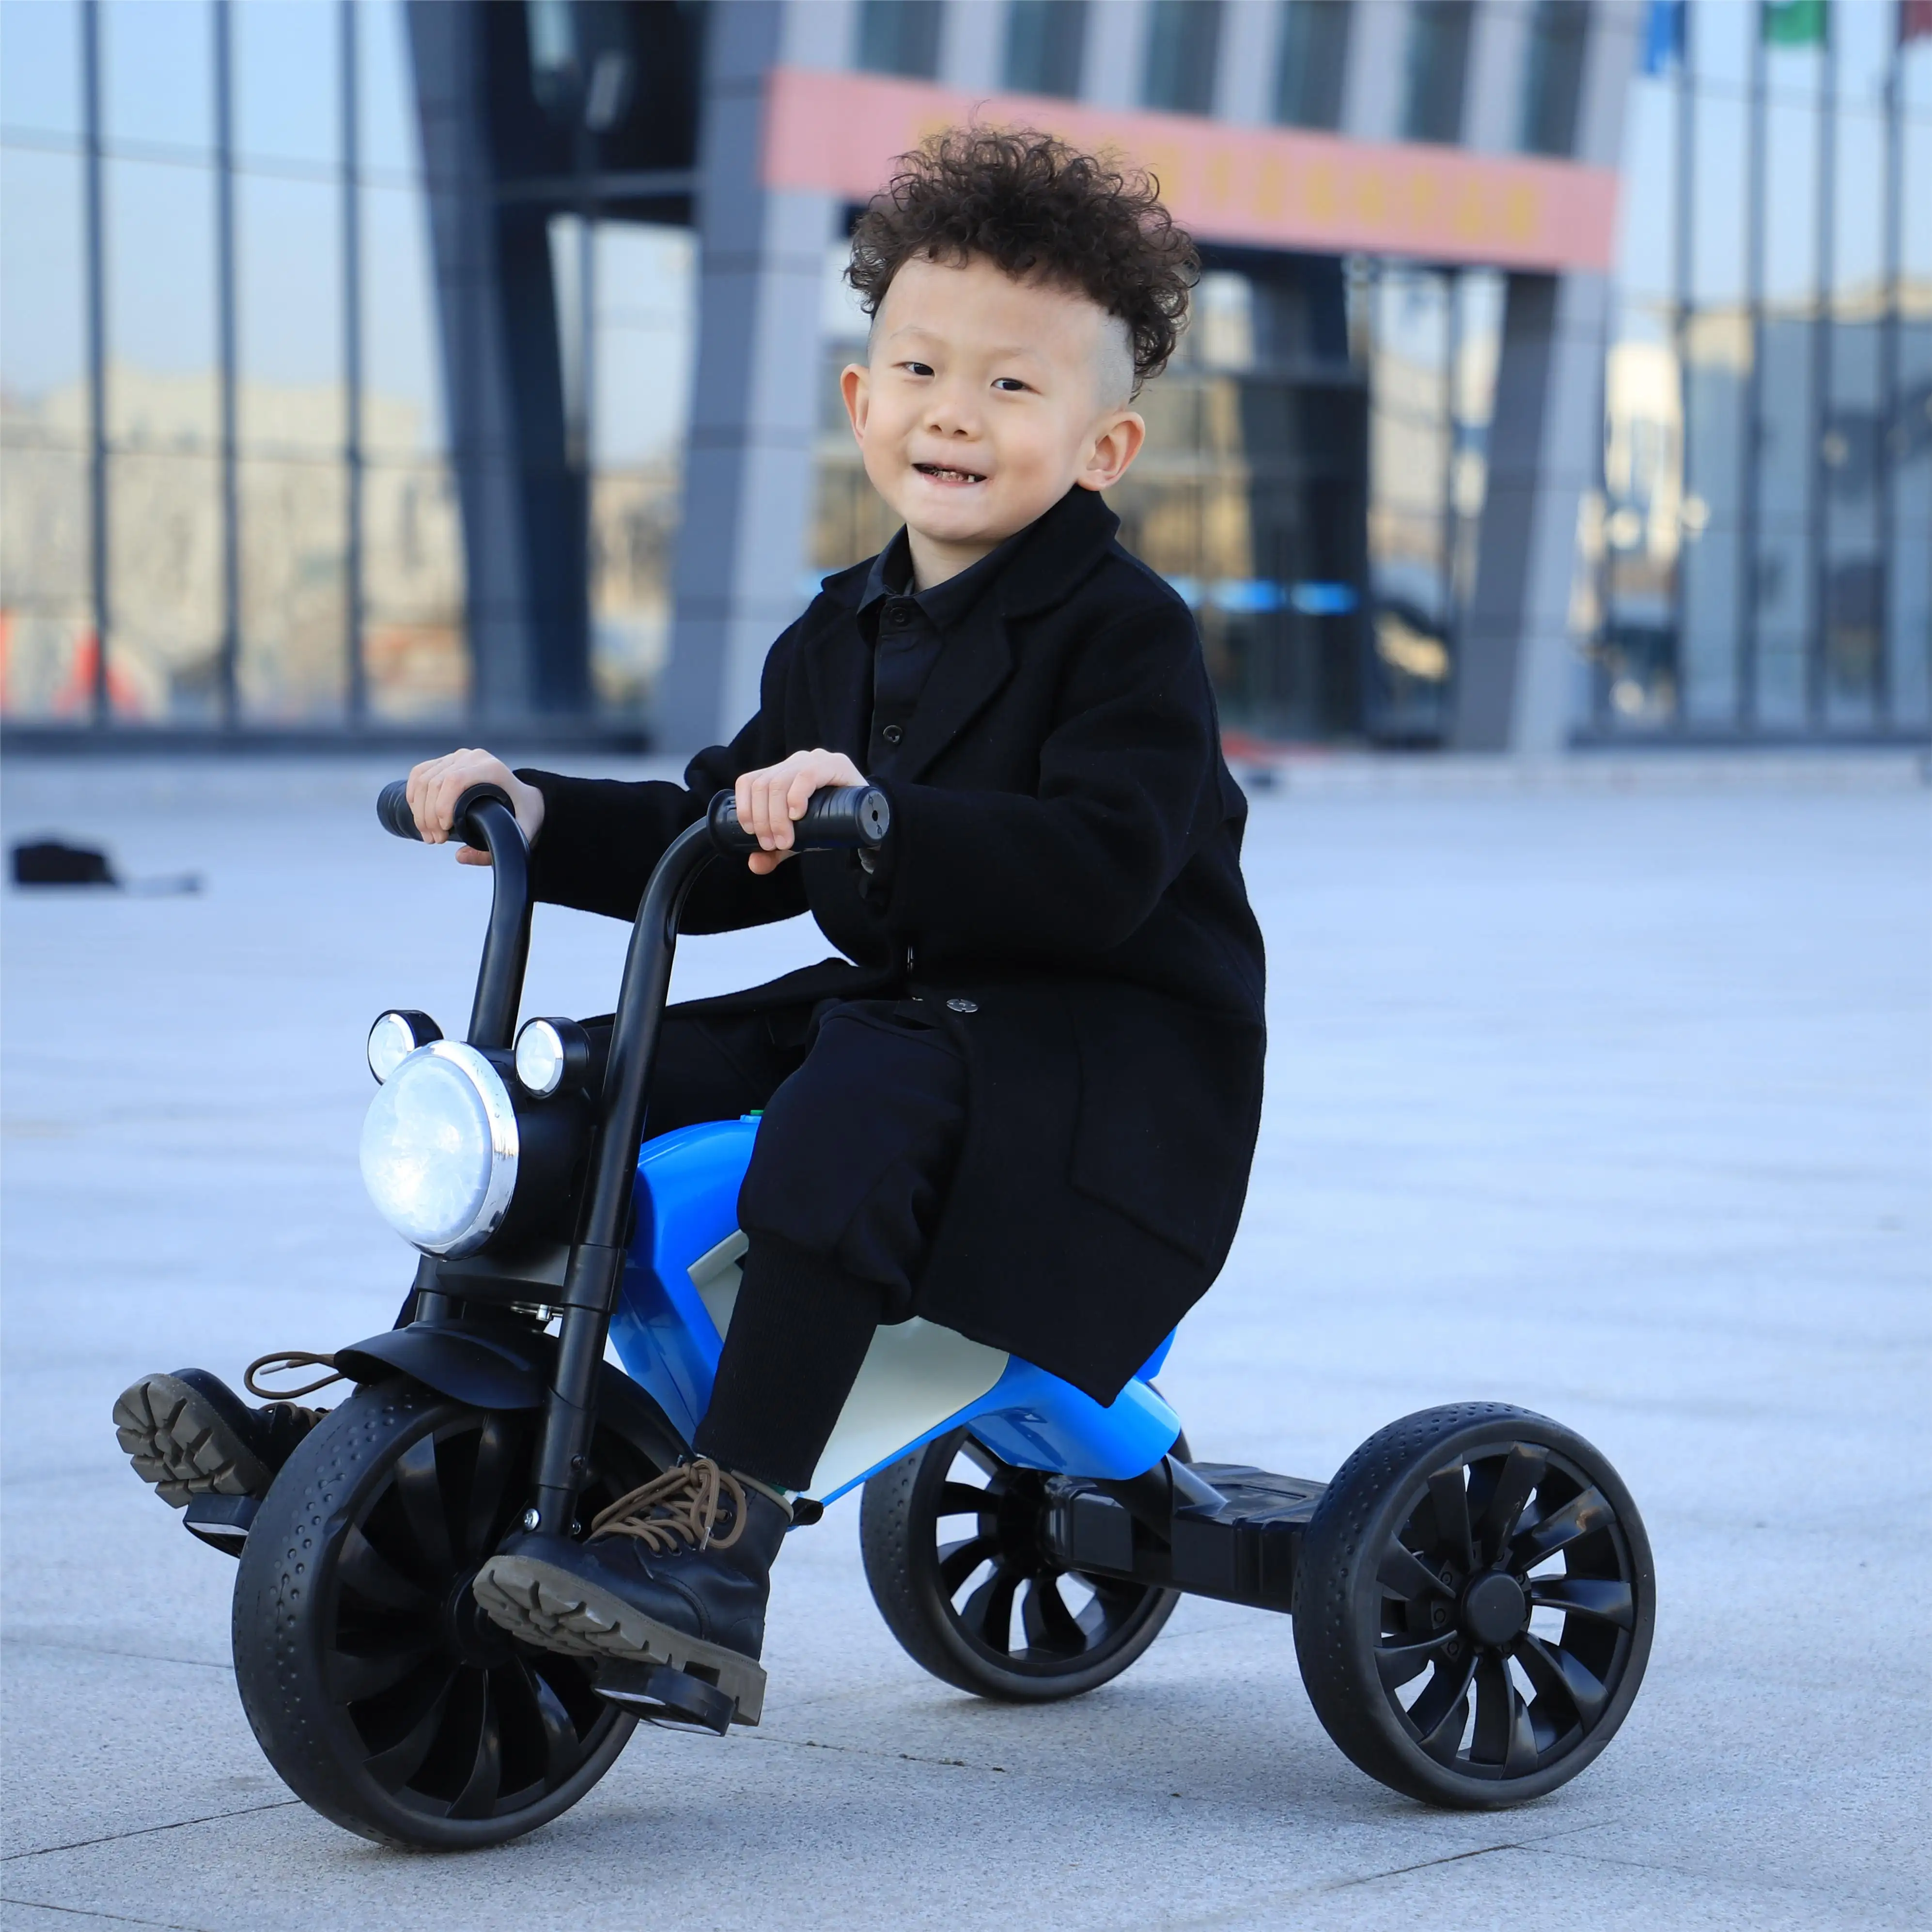 Vendita calda per bambini triciclo 3 ruote equilibrio auto in plastica e acciaio per esterno bambino bici giocattolo per età 1-6